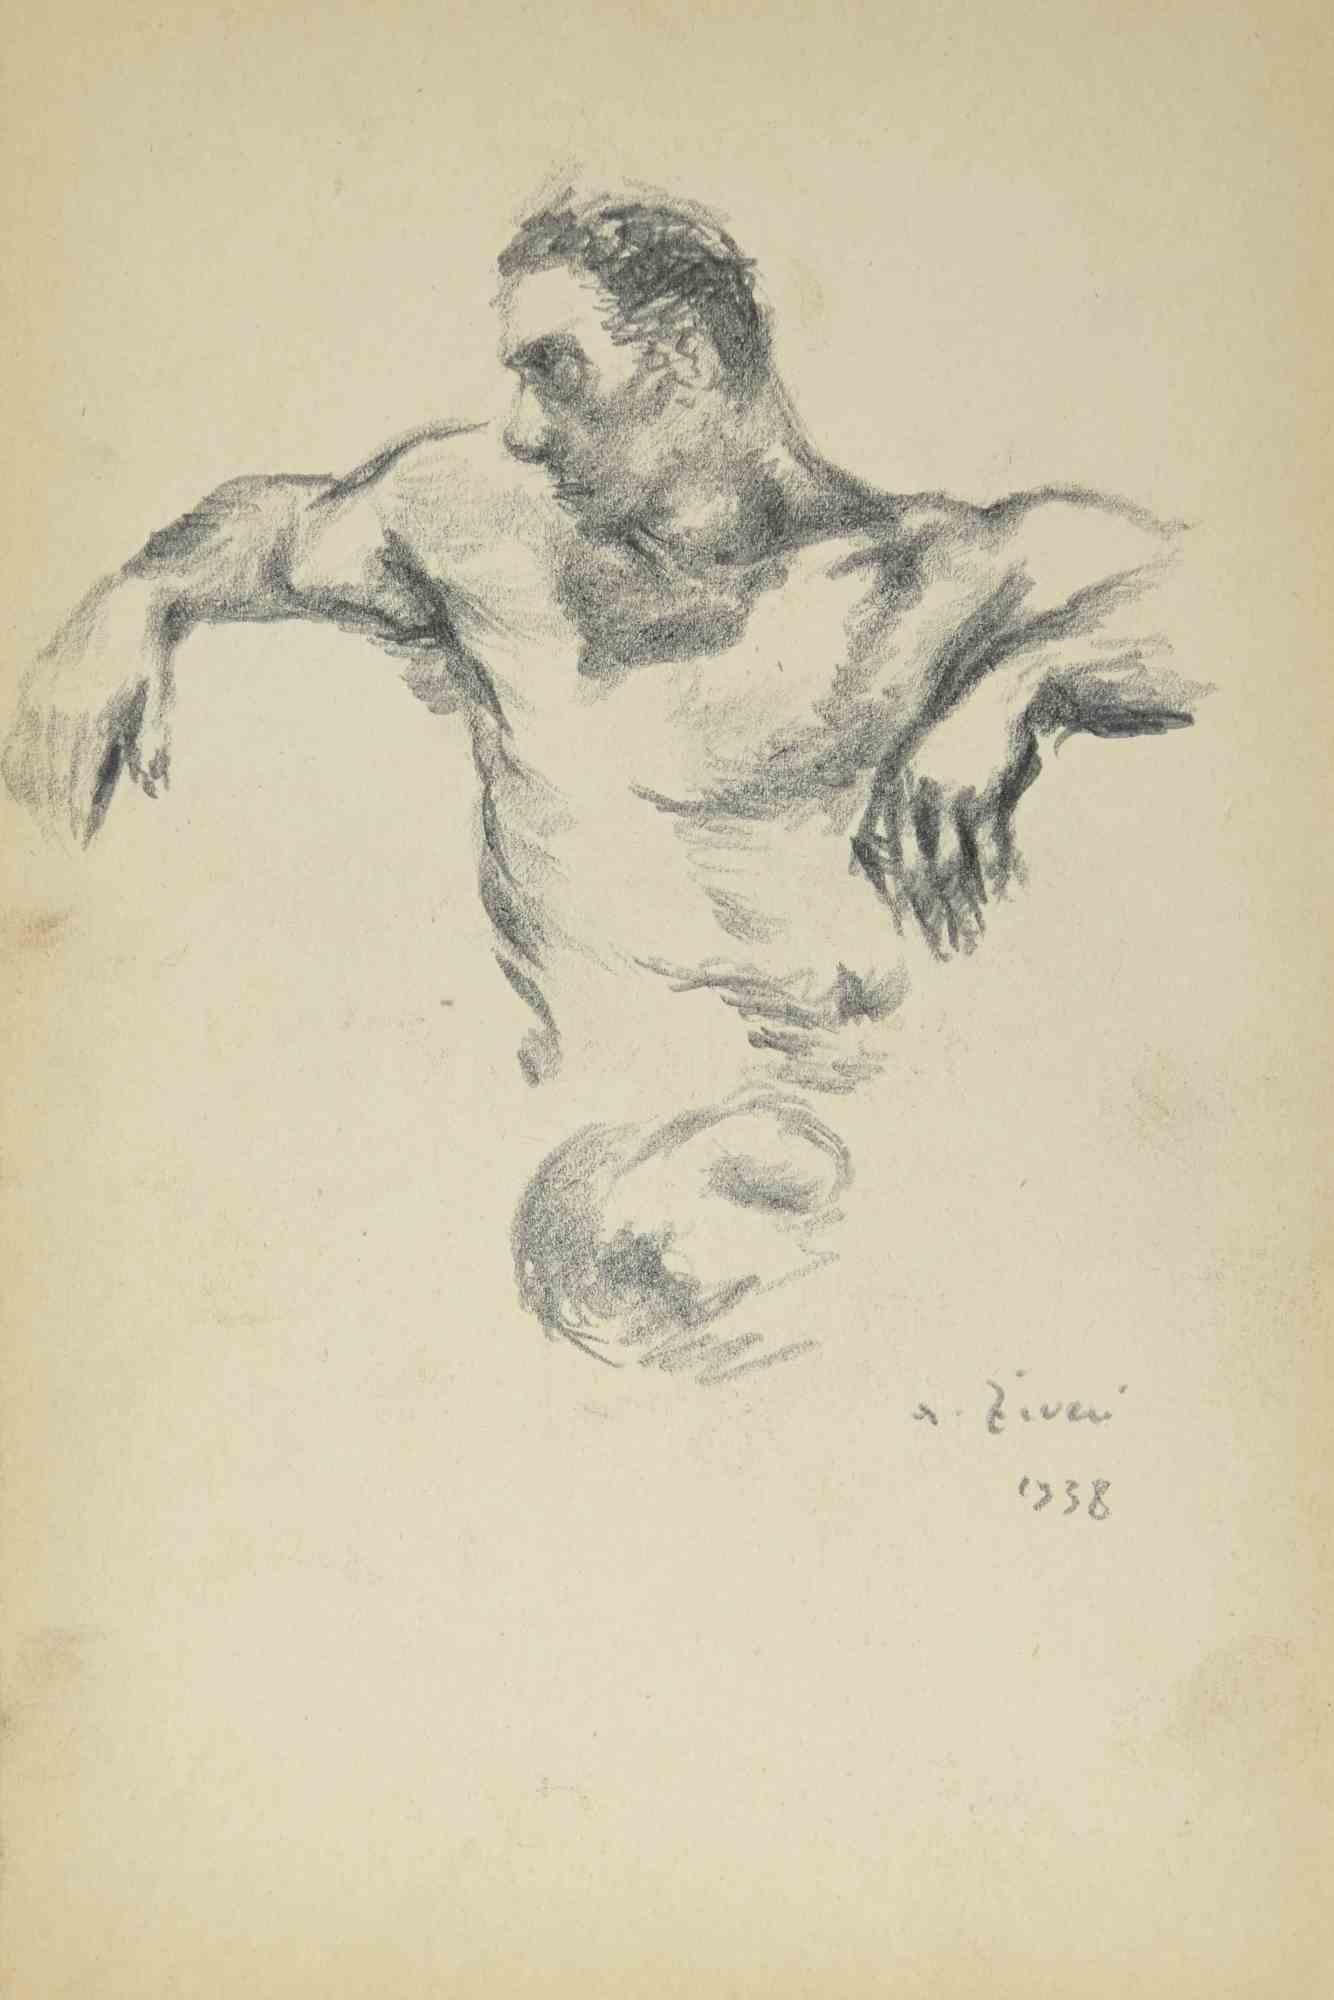 Male Nude ist eine Zeichnung von Alberto Ziveri aus dem Jahr 1938.

Zeichenkohle auf Papier.

Am unteren Rand handsigniert und datiert.

In gutem Zustand

Das Kunstwerk wird durch geschickte Striche meisterhaft dargestellt.

Alberto Ziveri (Rom,